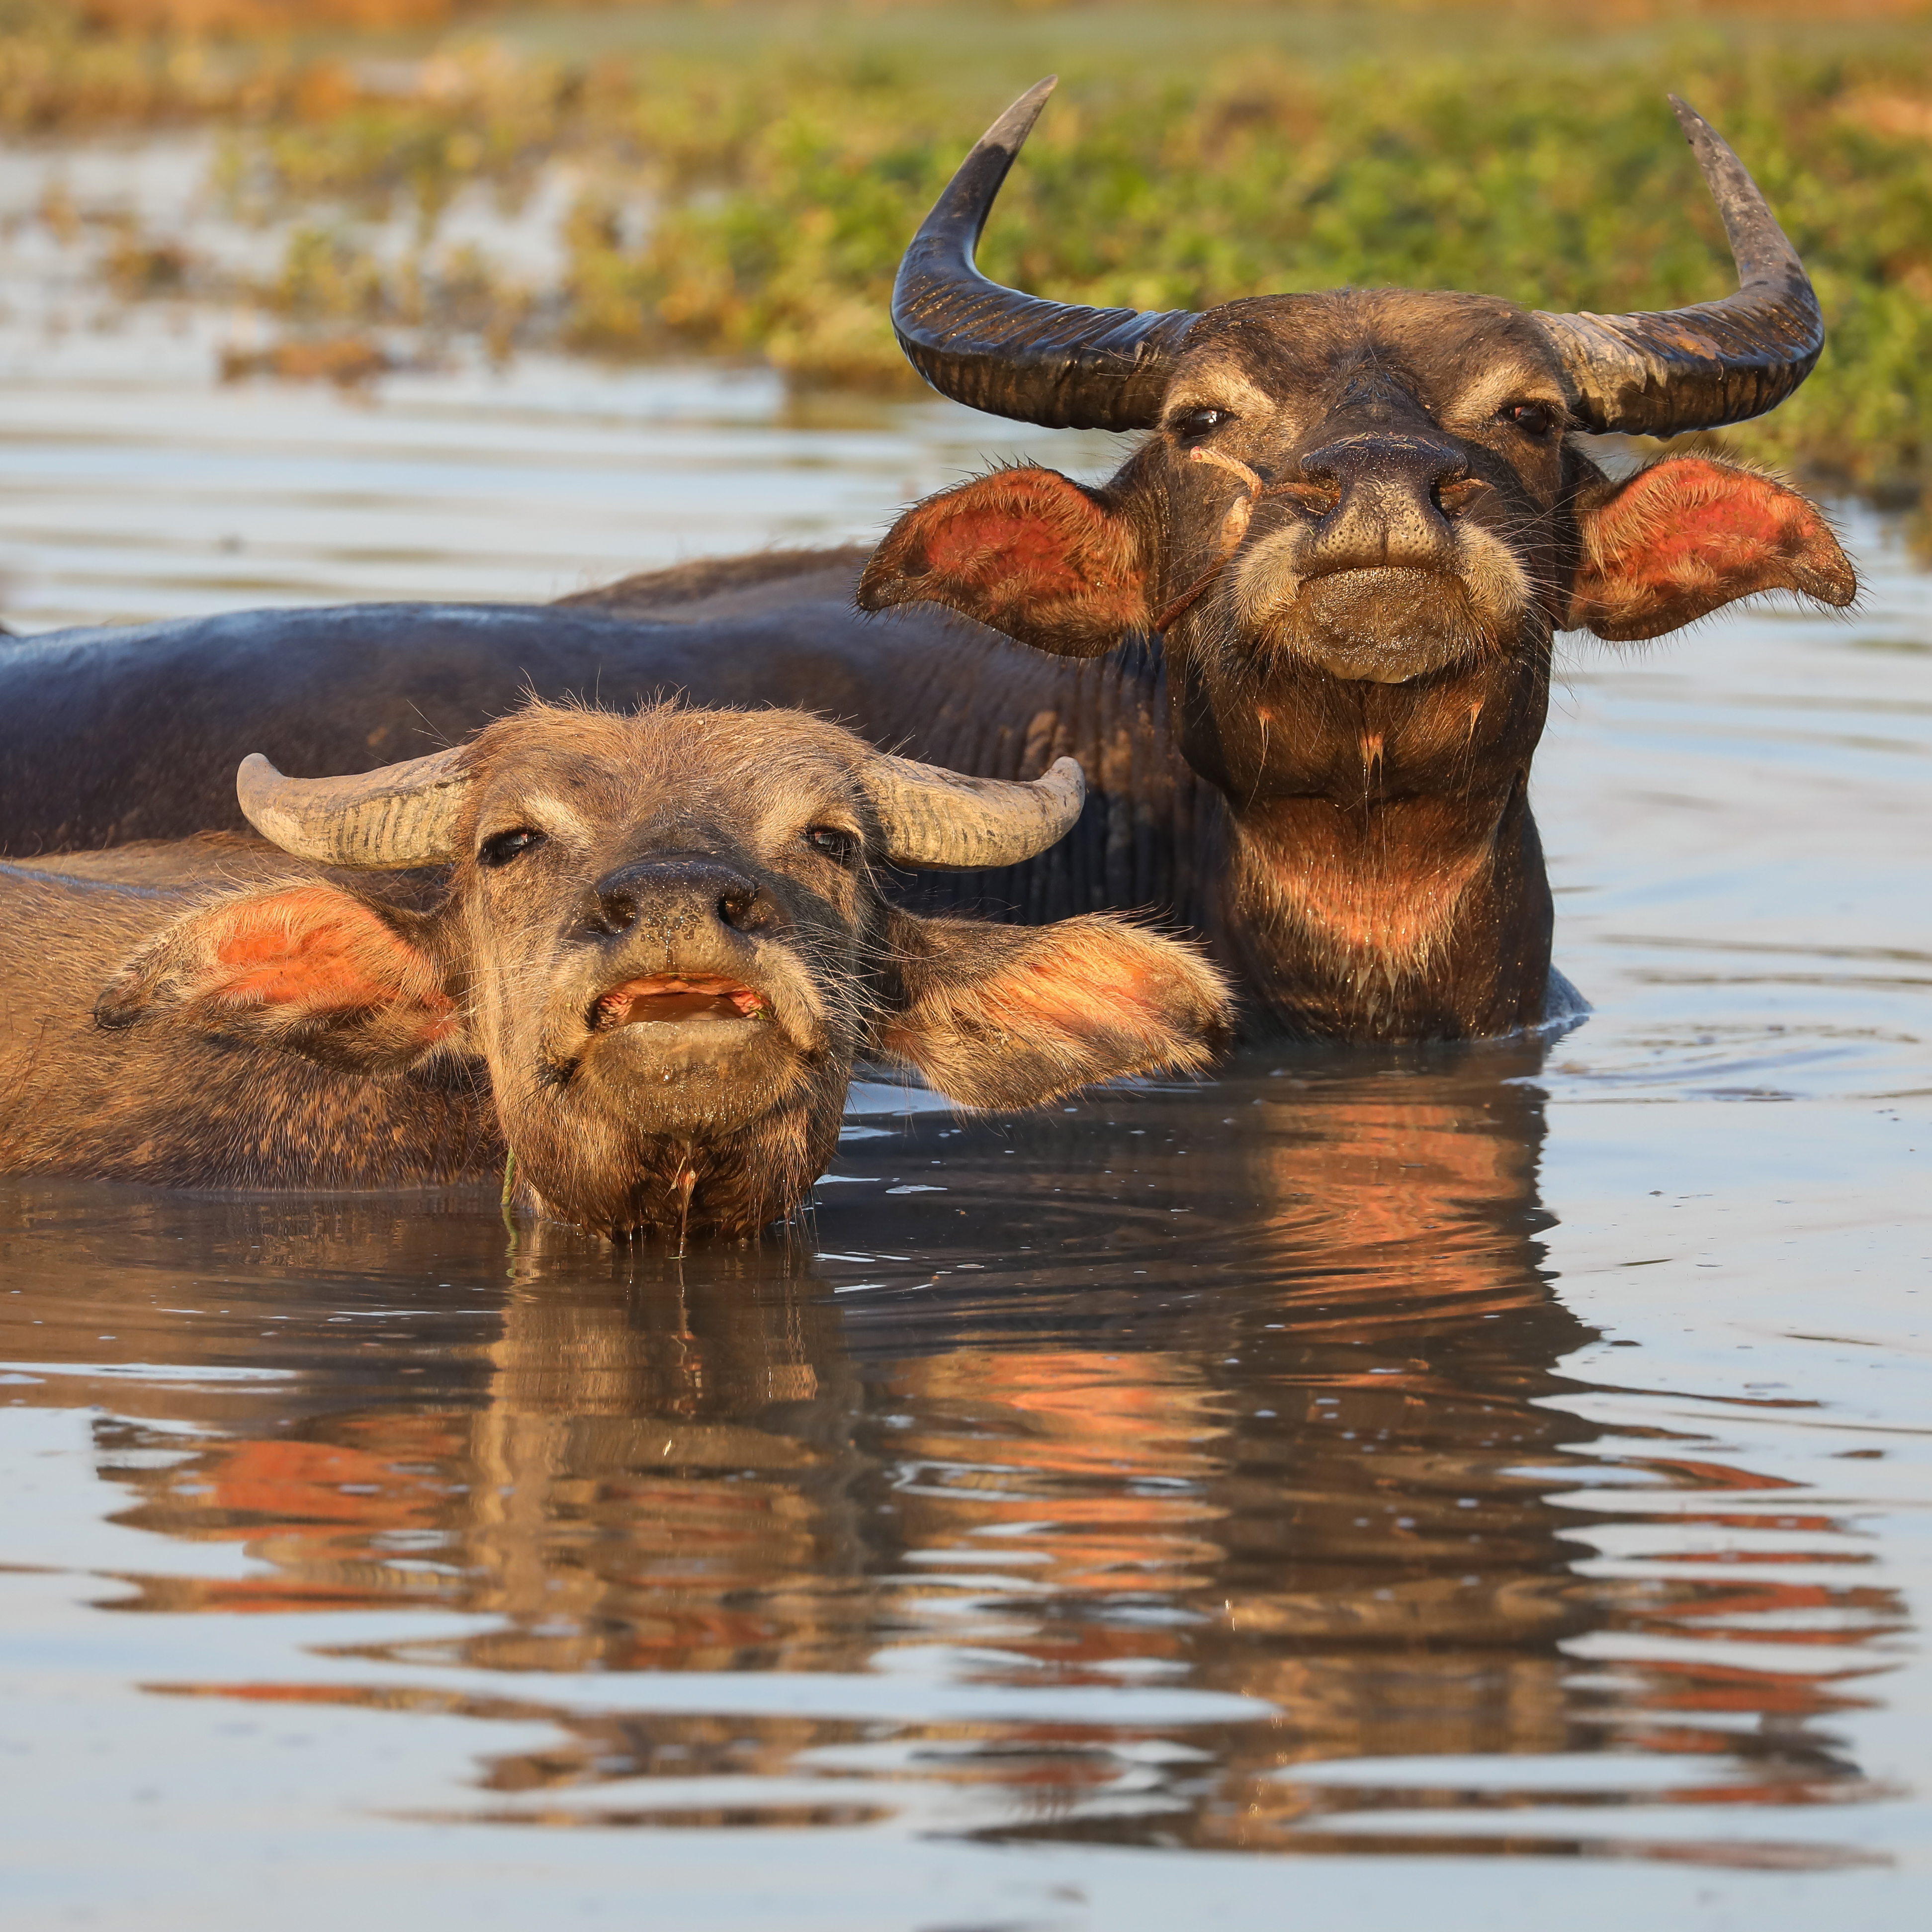 Water buffalo - Wikipedia